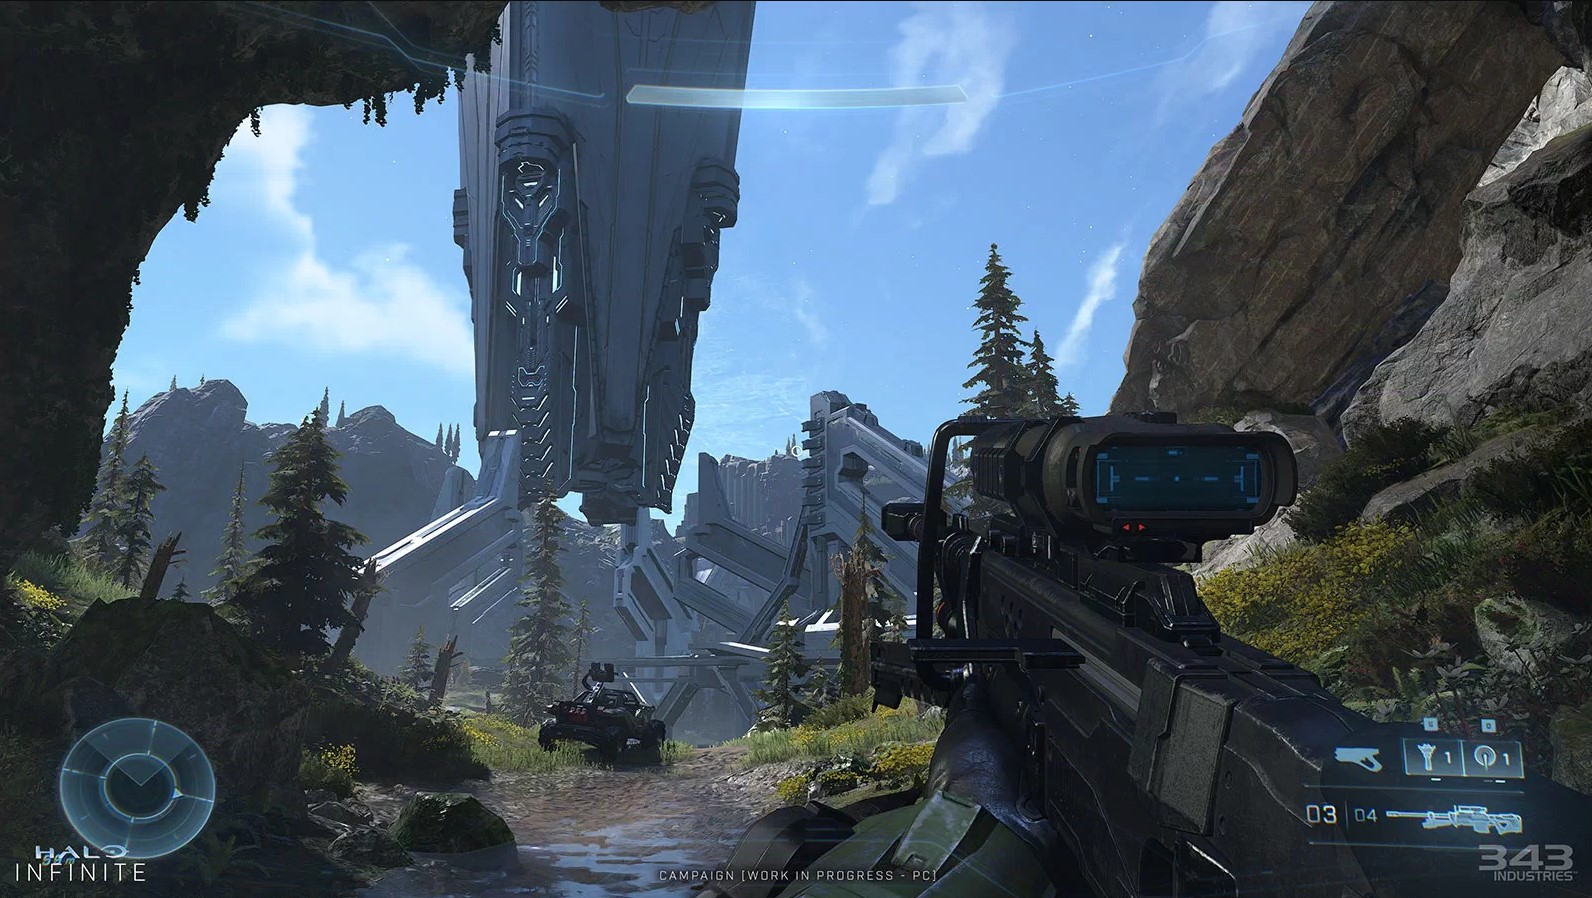 Νέα screenshots από το Halo Infinite φανερώνουν έναν πιο λεπτομερή κόσμο